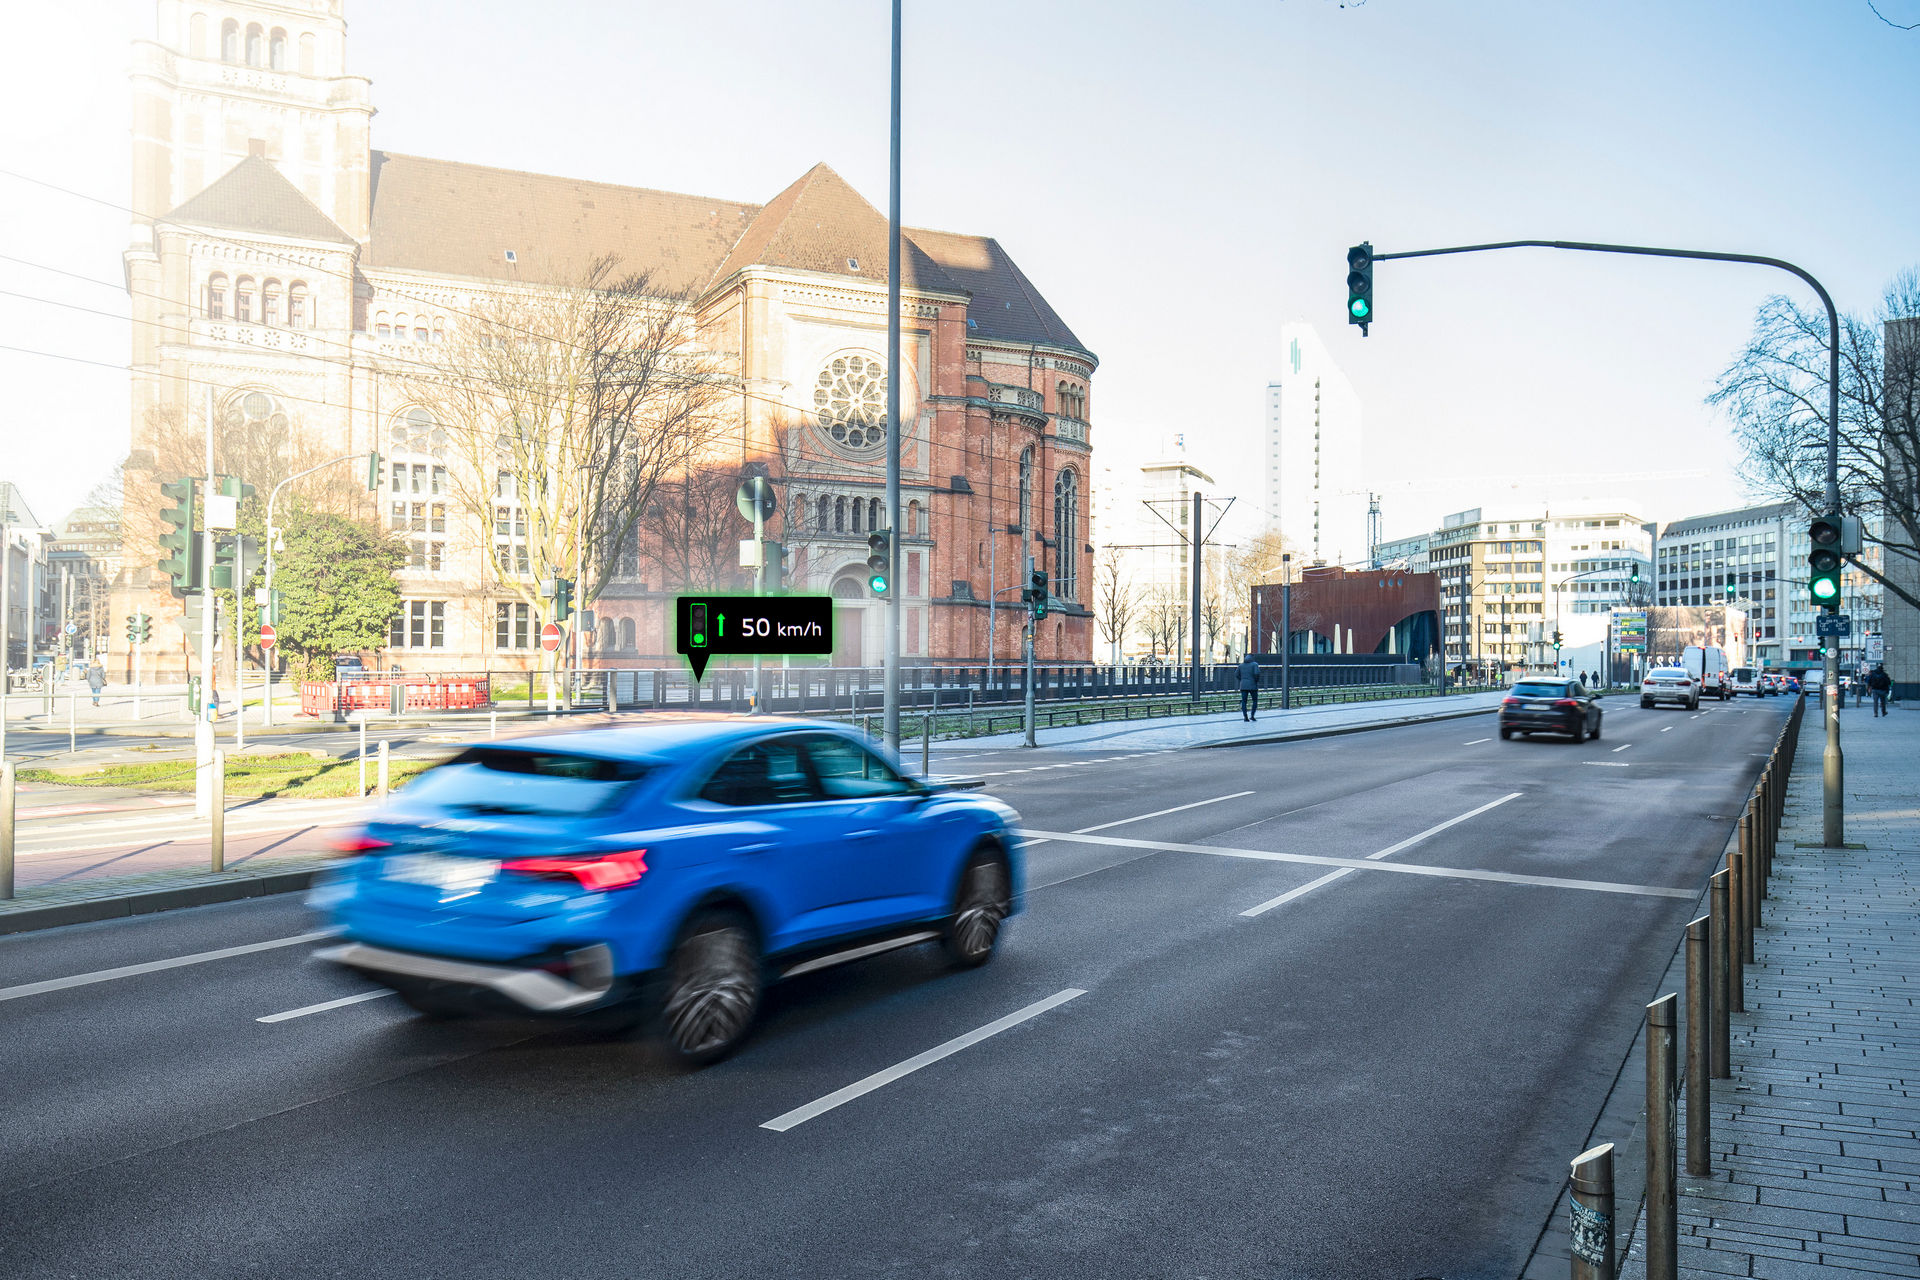 سيارات اودي تبدأ بالتواصل مع إشارات المرور في ألمانيا! 4